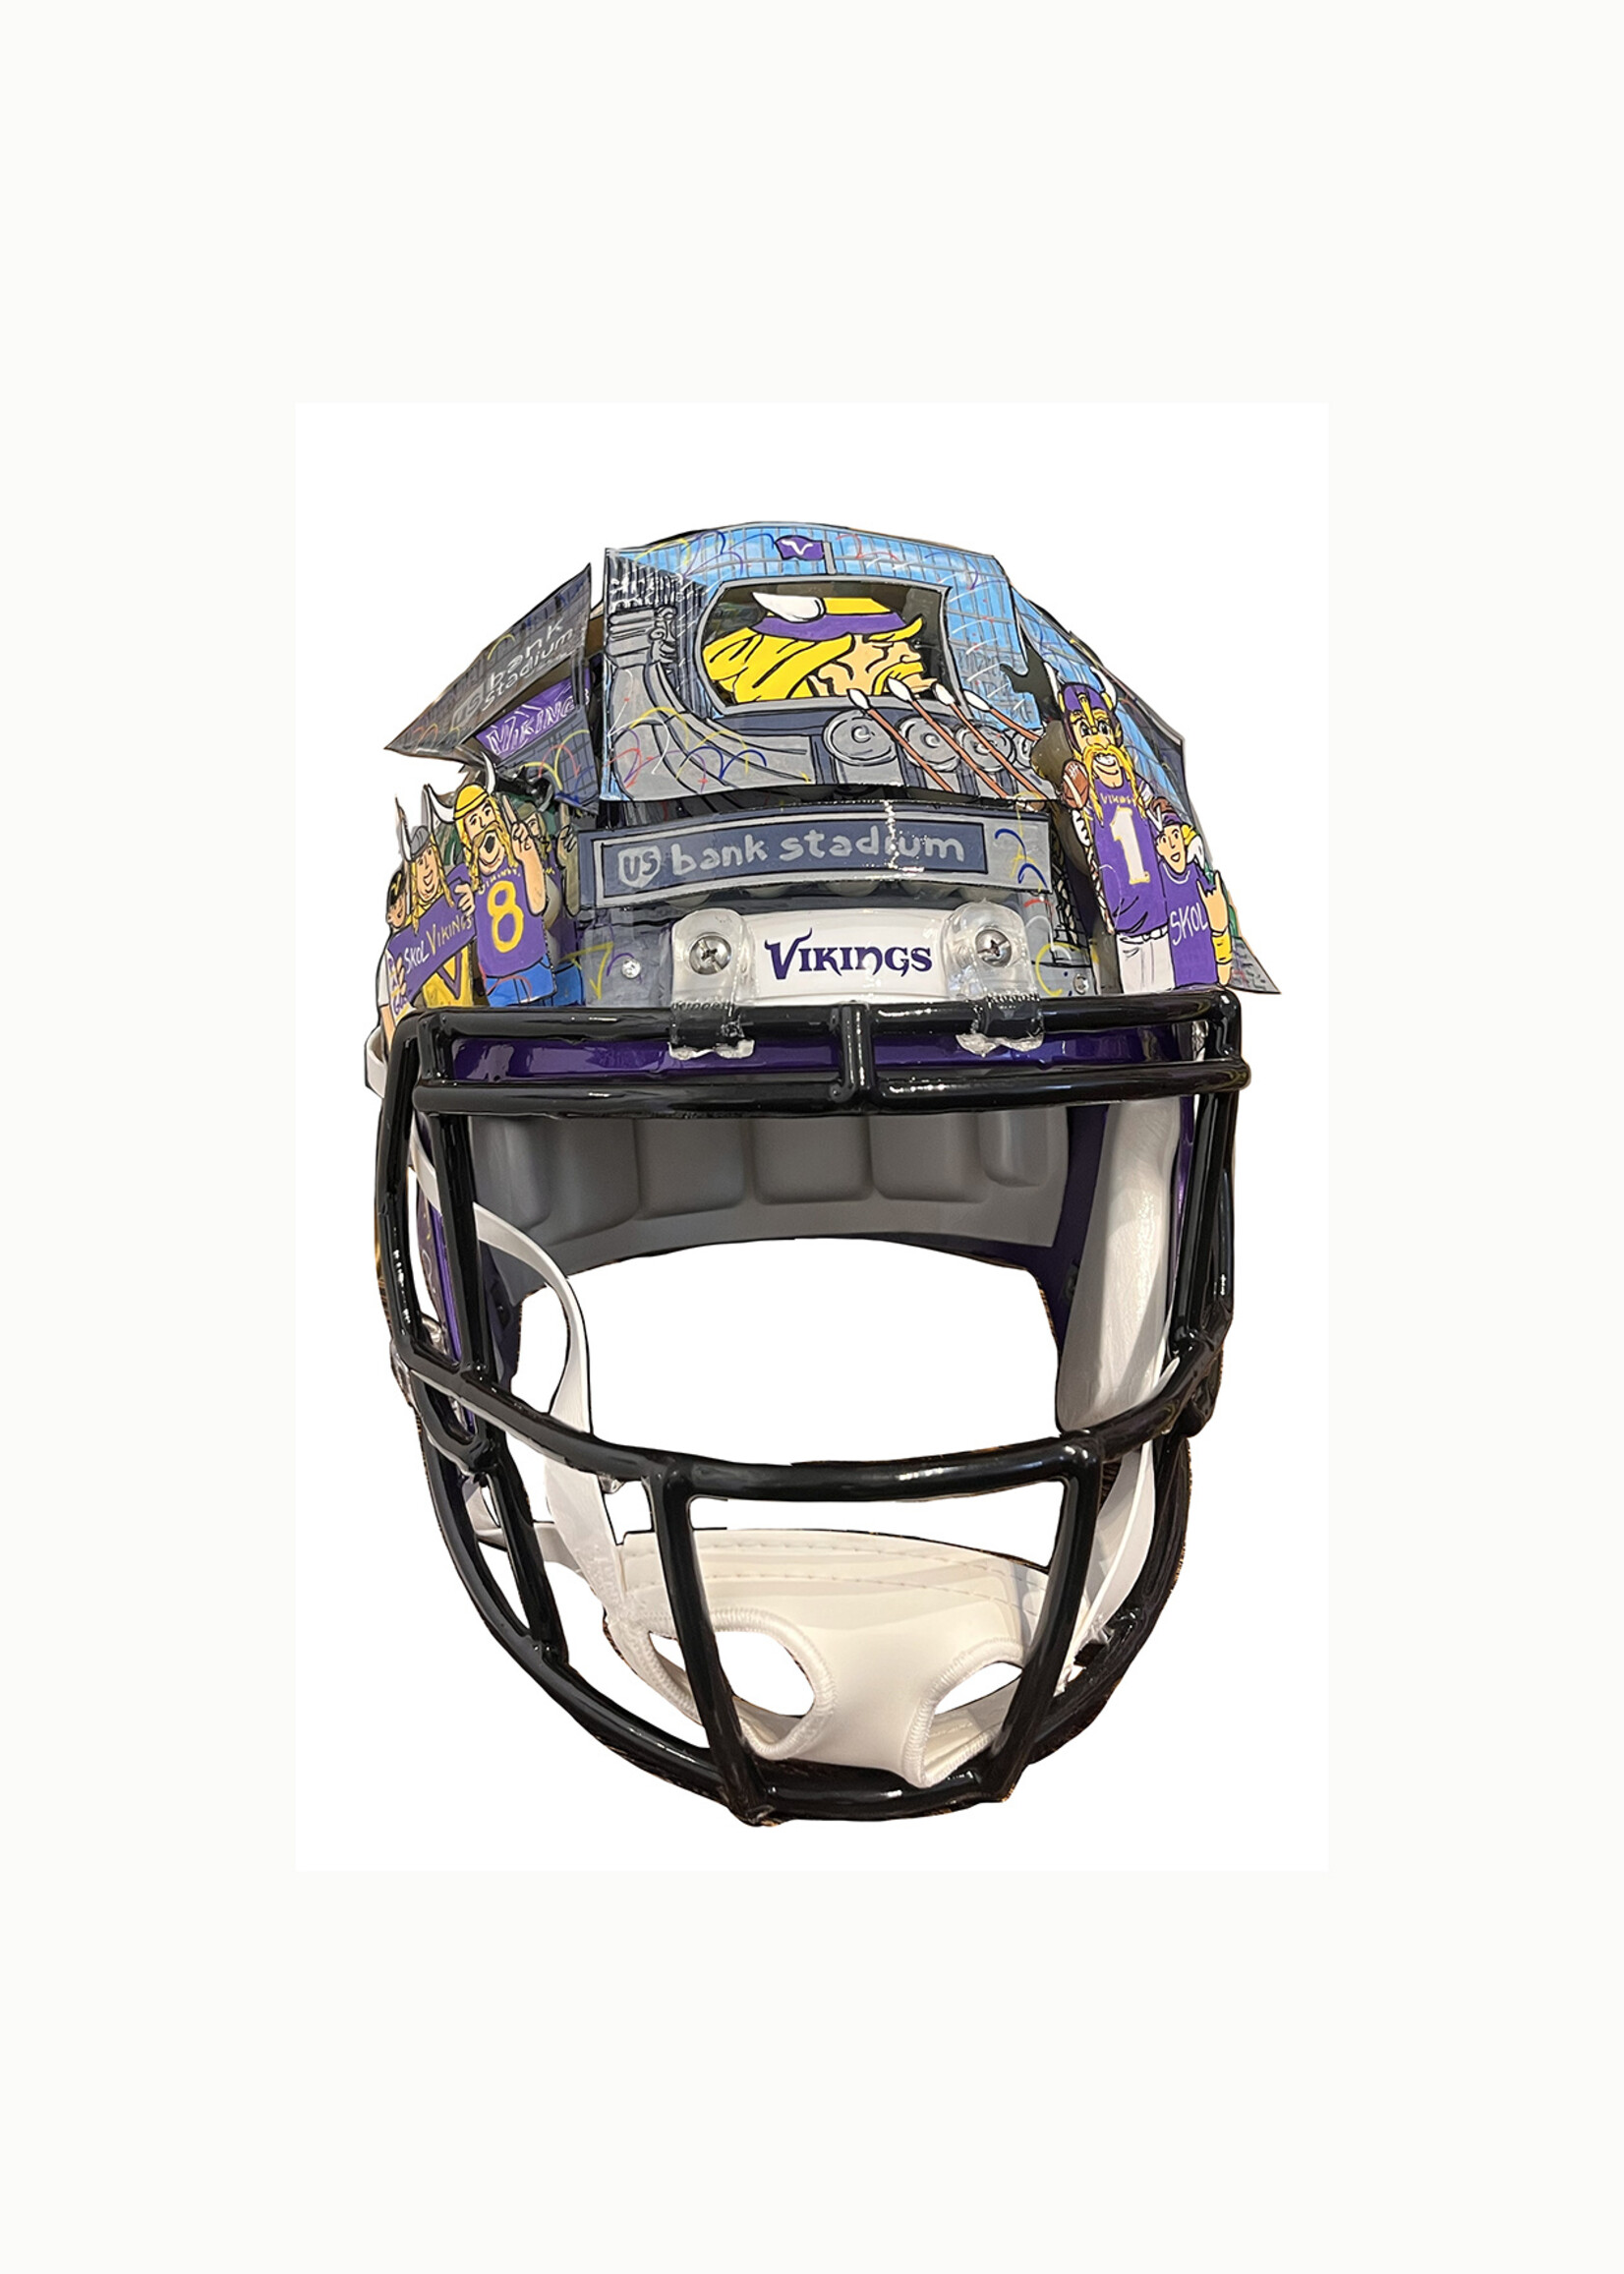 Charles Fazzino Charles Fazzino "Minnesota Vikings Helmet"